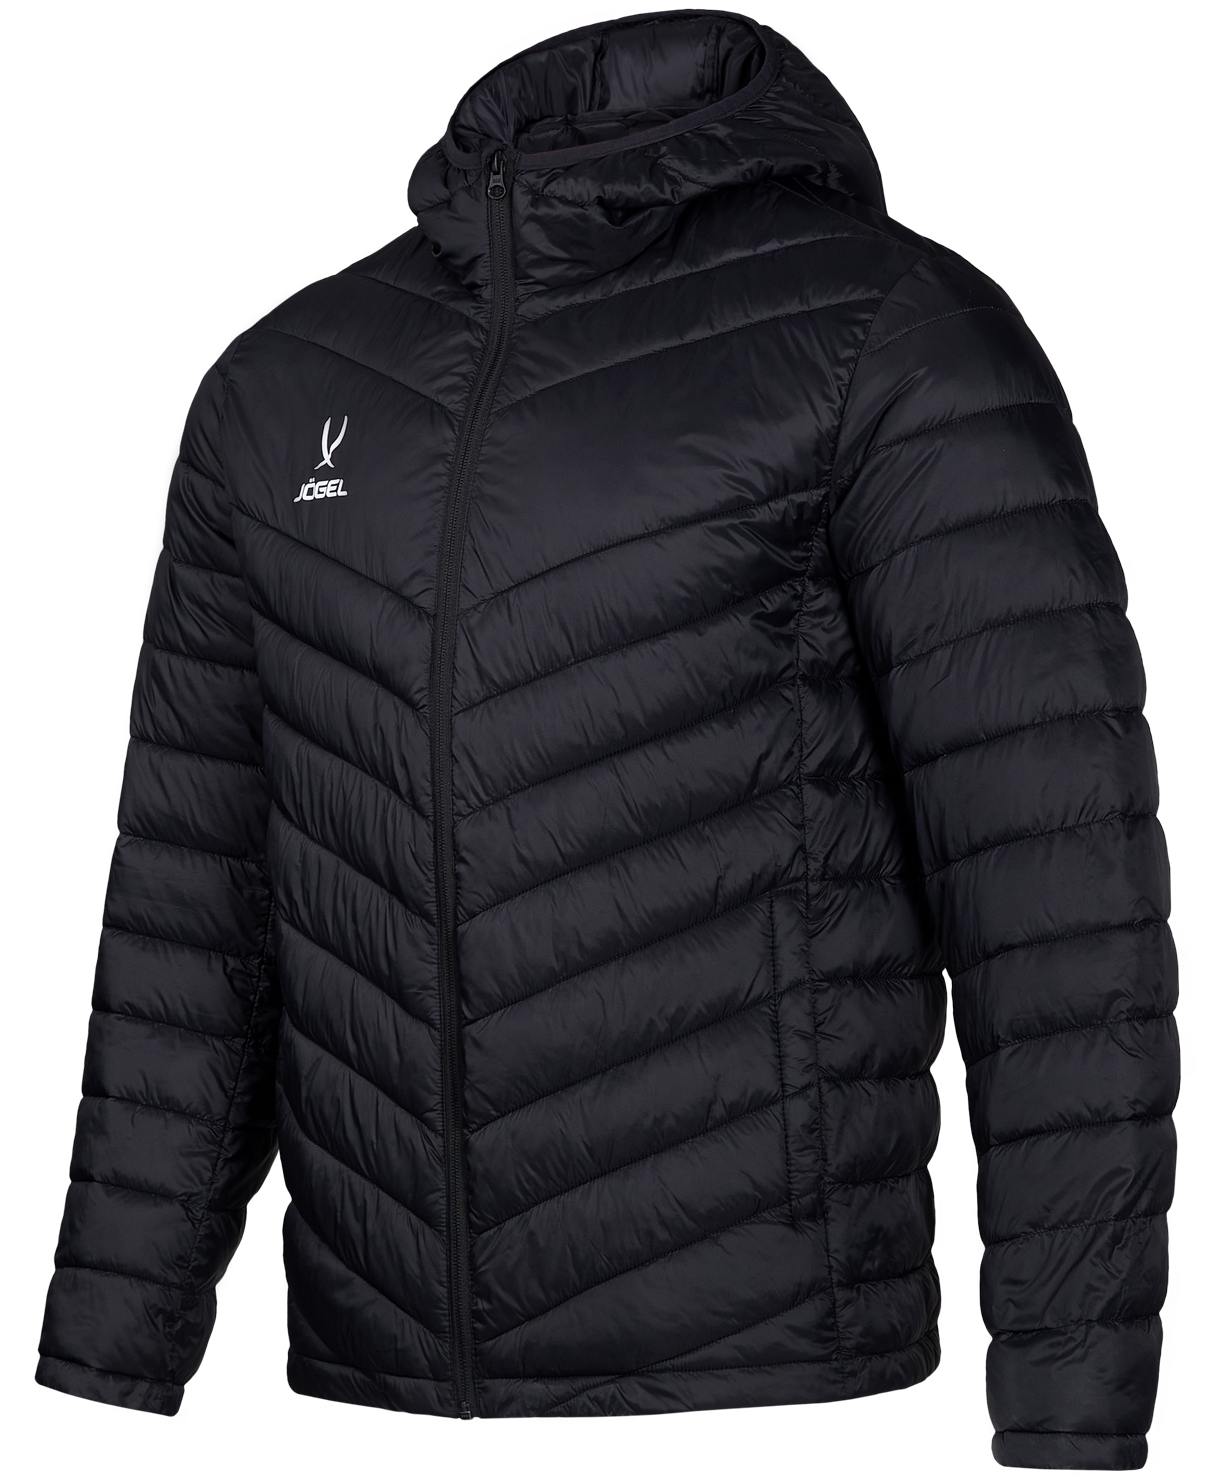 Куртка мужская Jogel ЦБ-00002527 черная L